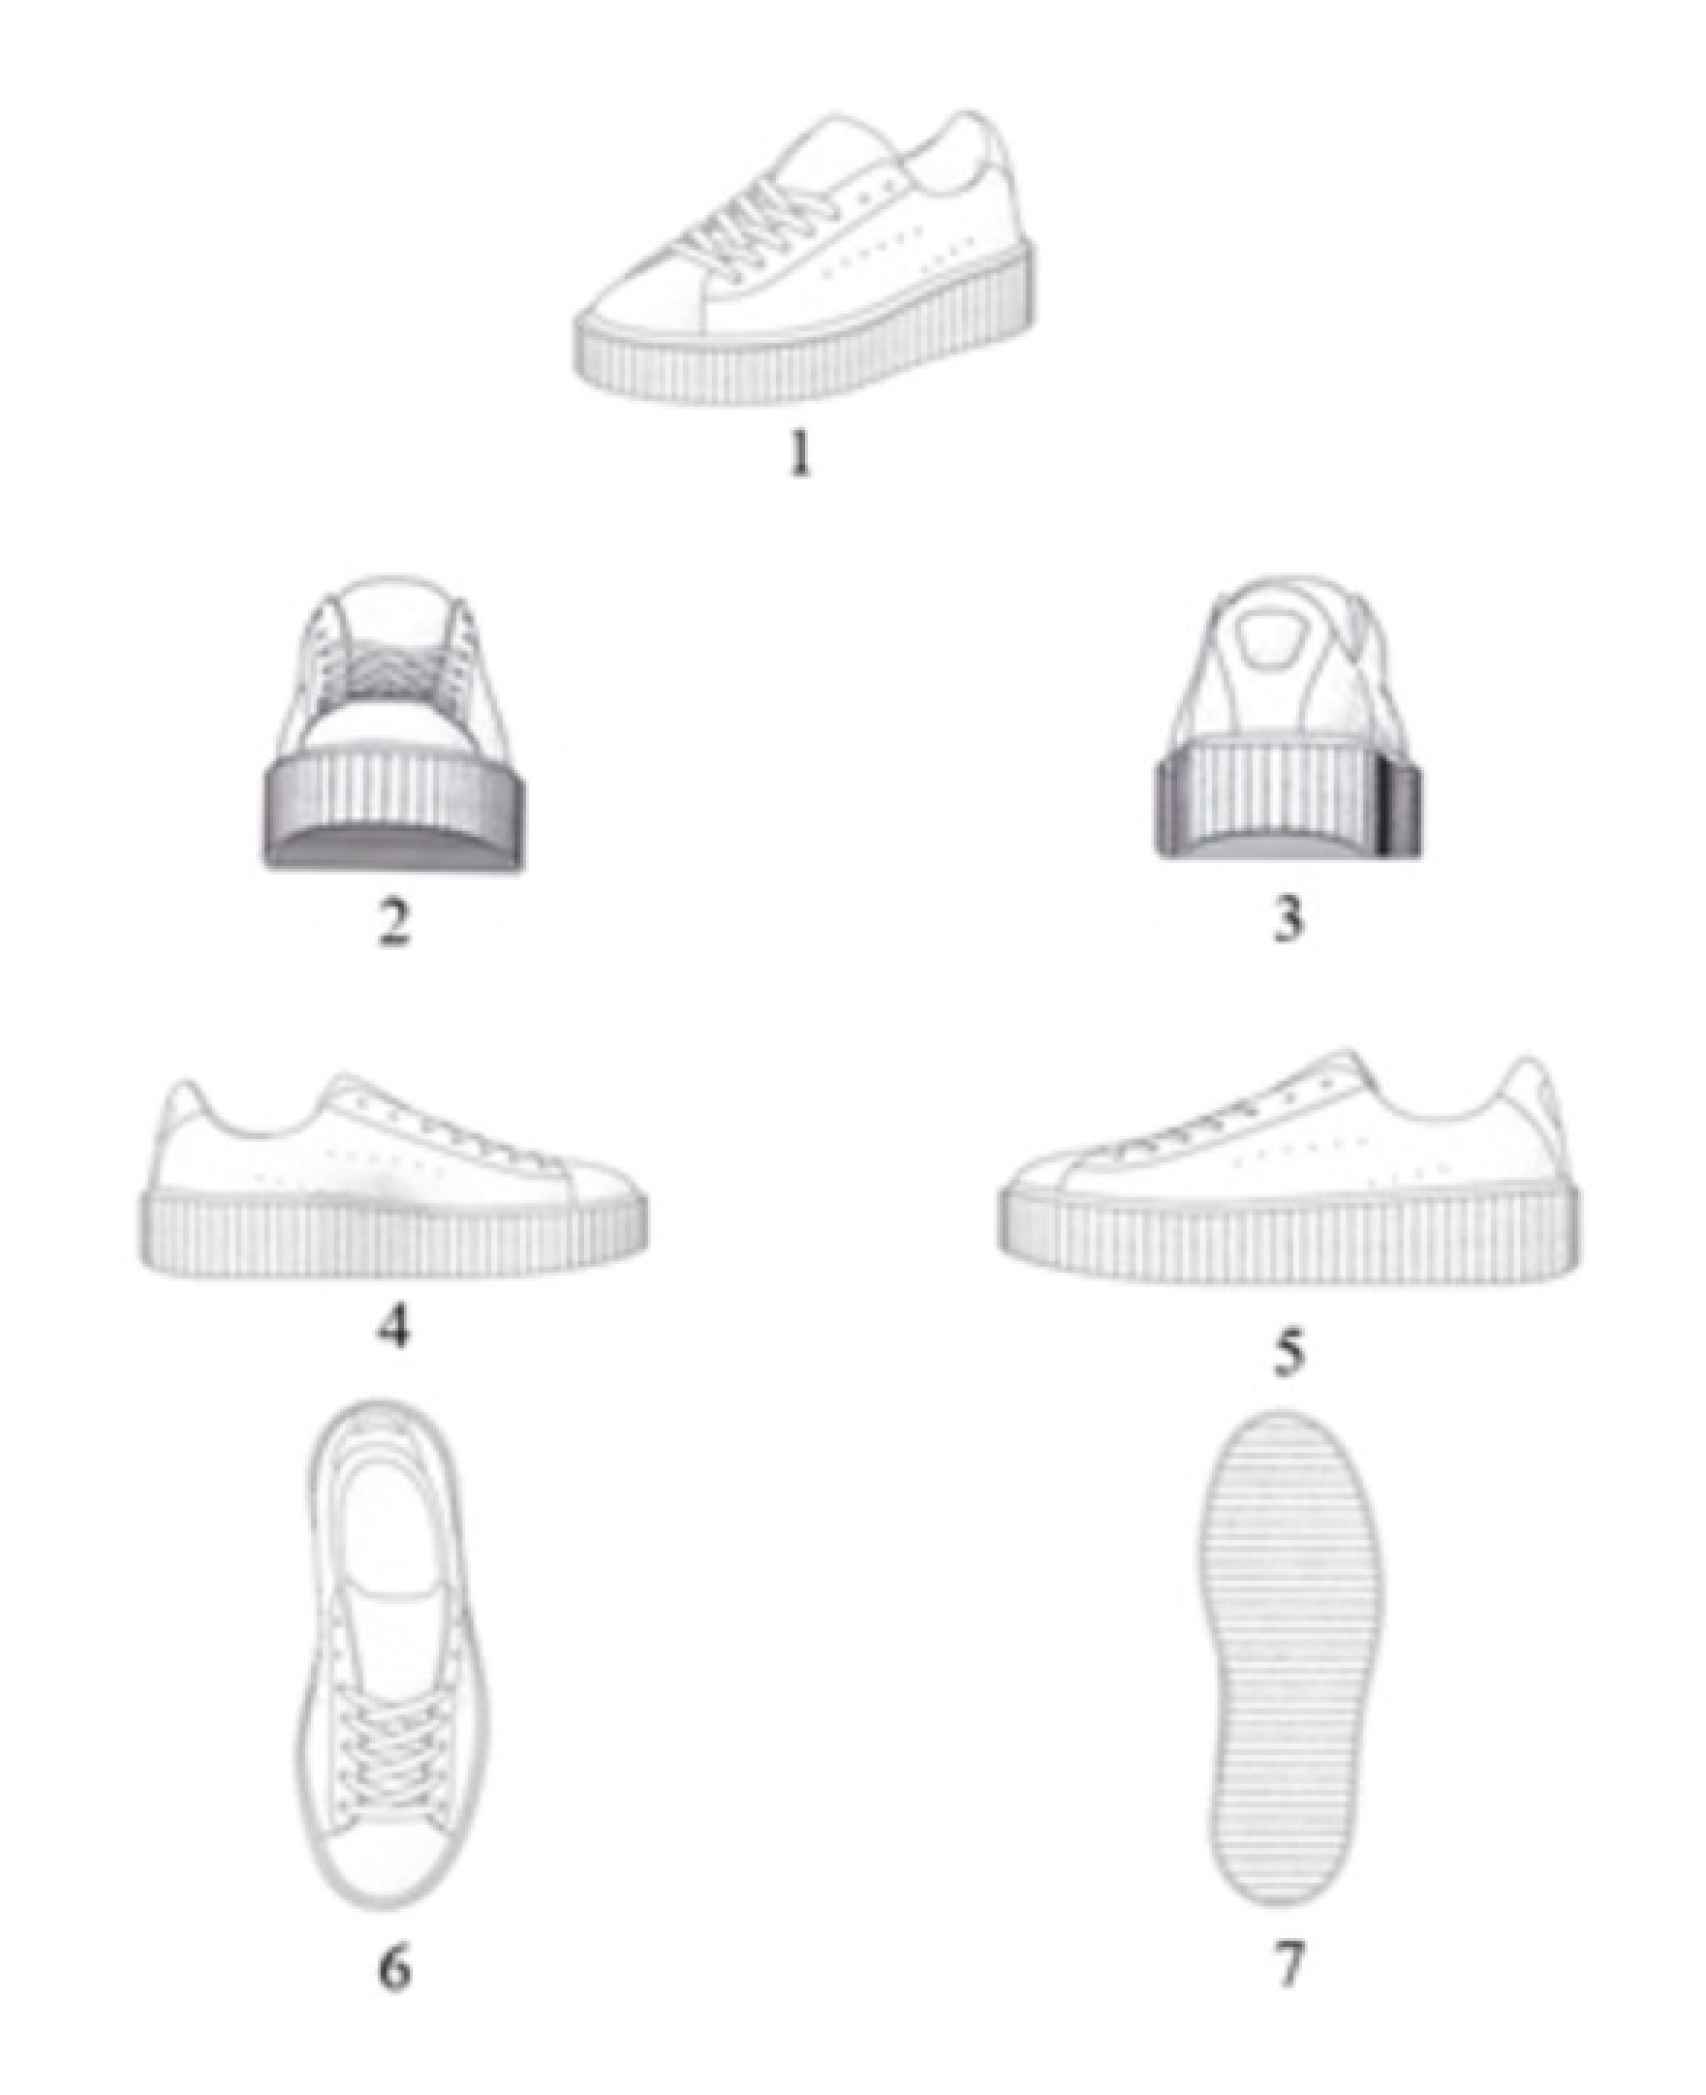 Imagen del diseño de zapatillas que pretendía registrar Puma